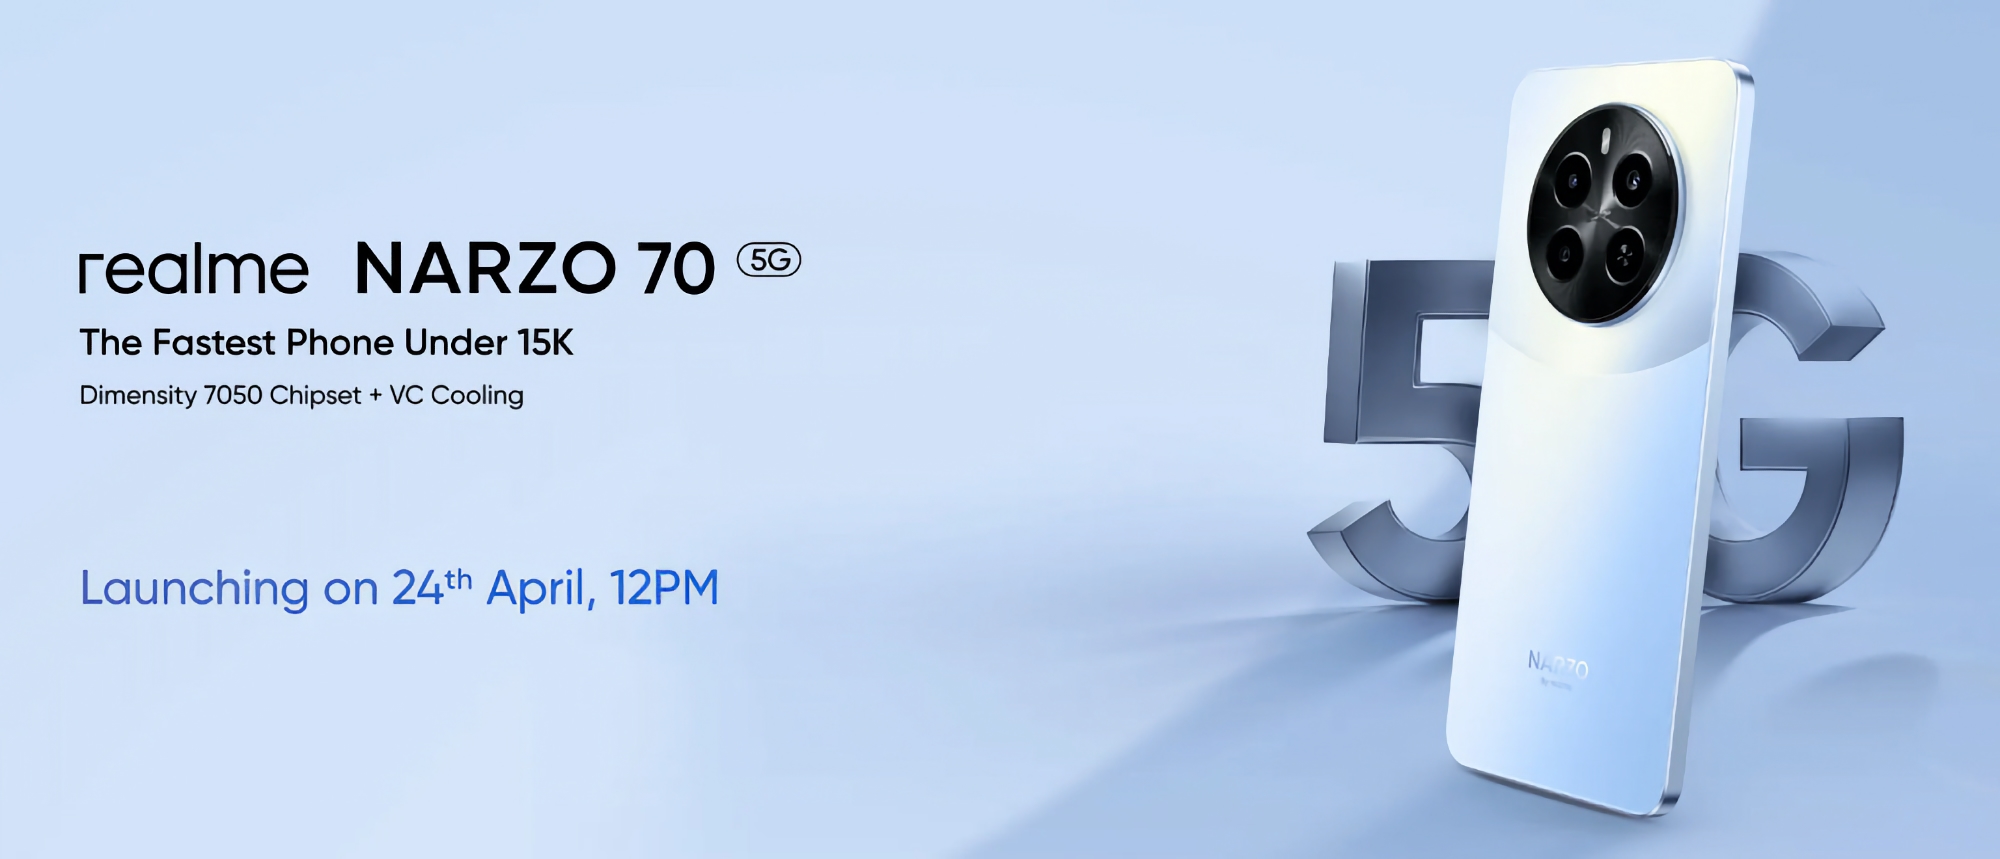 Ya es oficial: realme Narzo 70 5G con chip MediaTek Dimensity 7050 debutará el 24 de abril